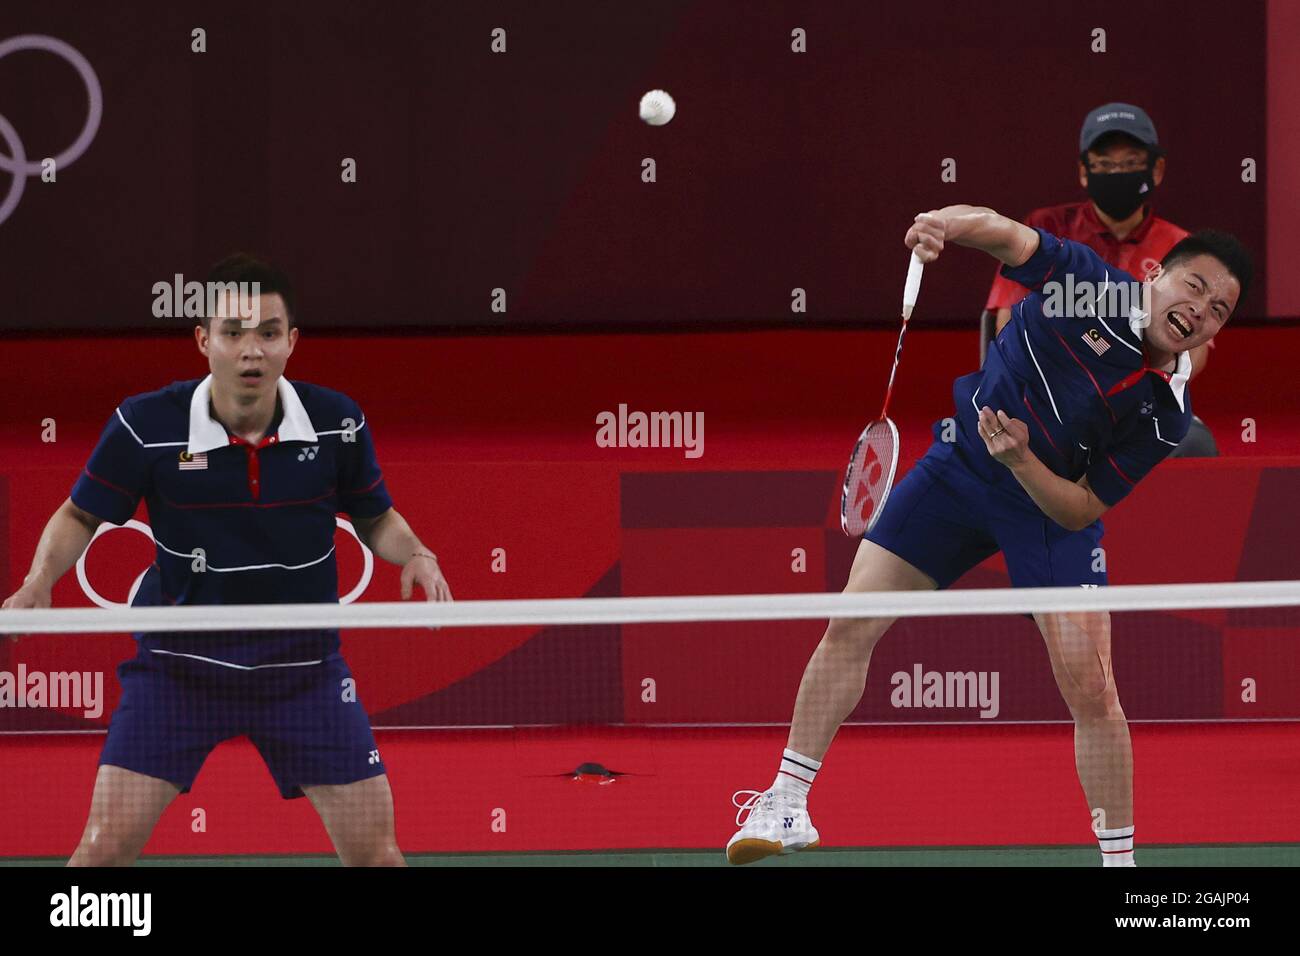 Badminton olympics 2021 malaysia